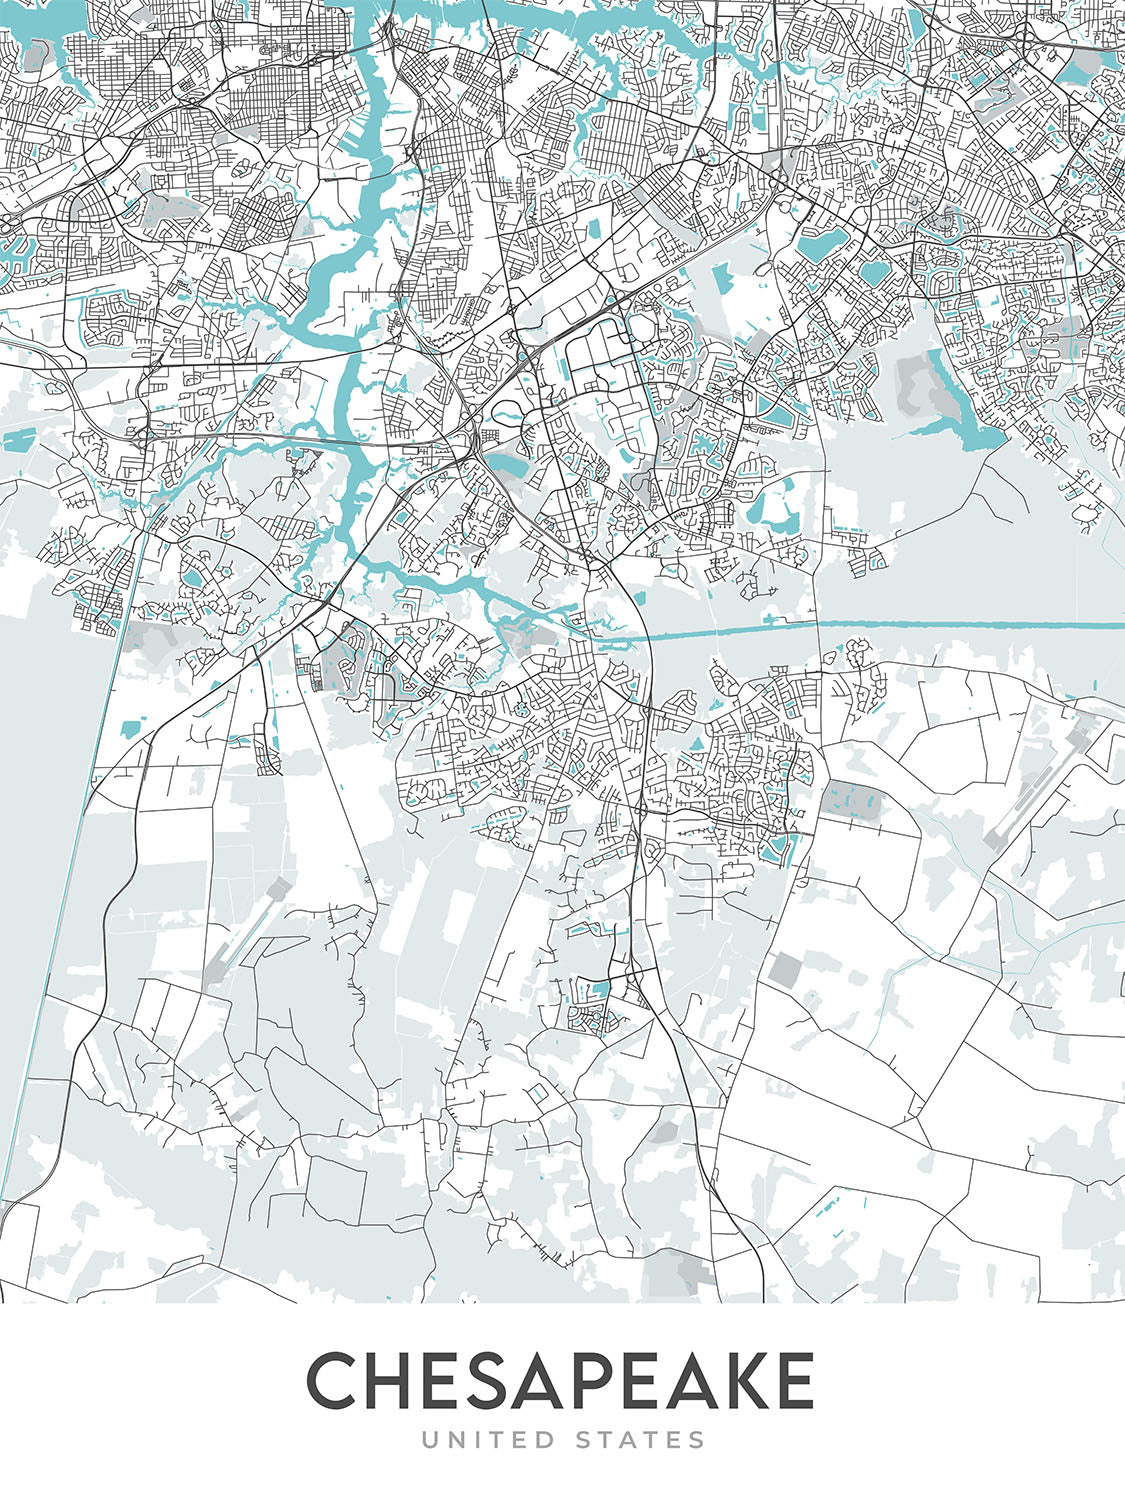 Mapa moderno de la ciudad de Chesapeake, VA: Bahía de Chesapeake, Norfolk, Virginia Beach, Great Dismal Swamp, I-64